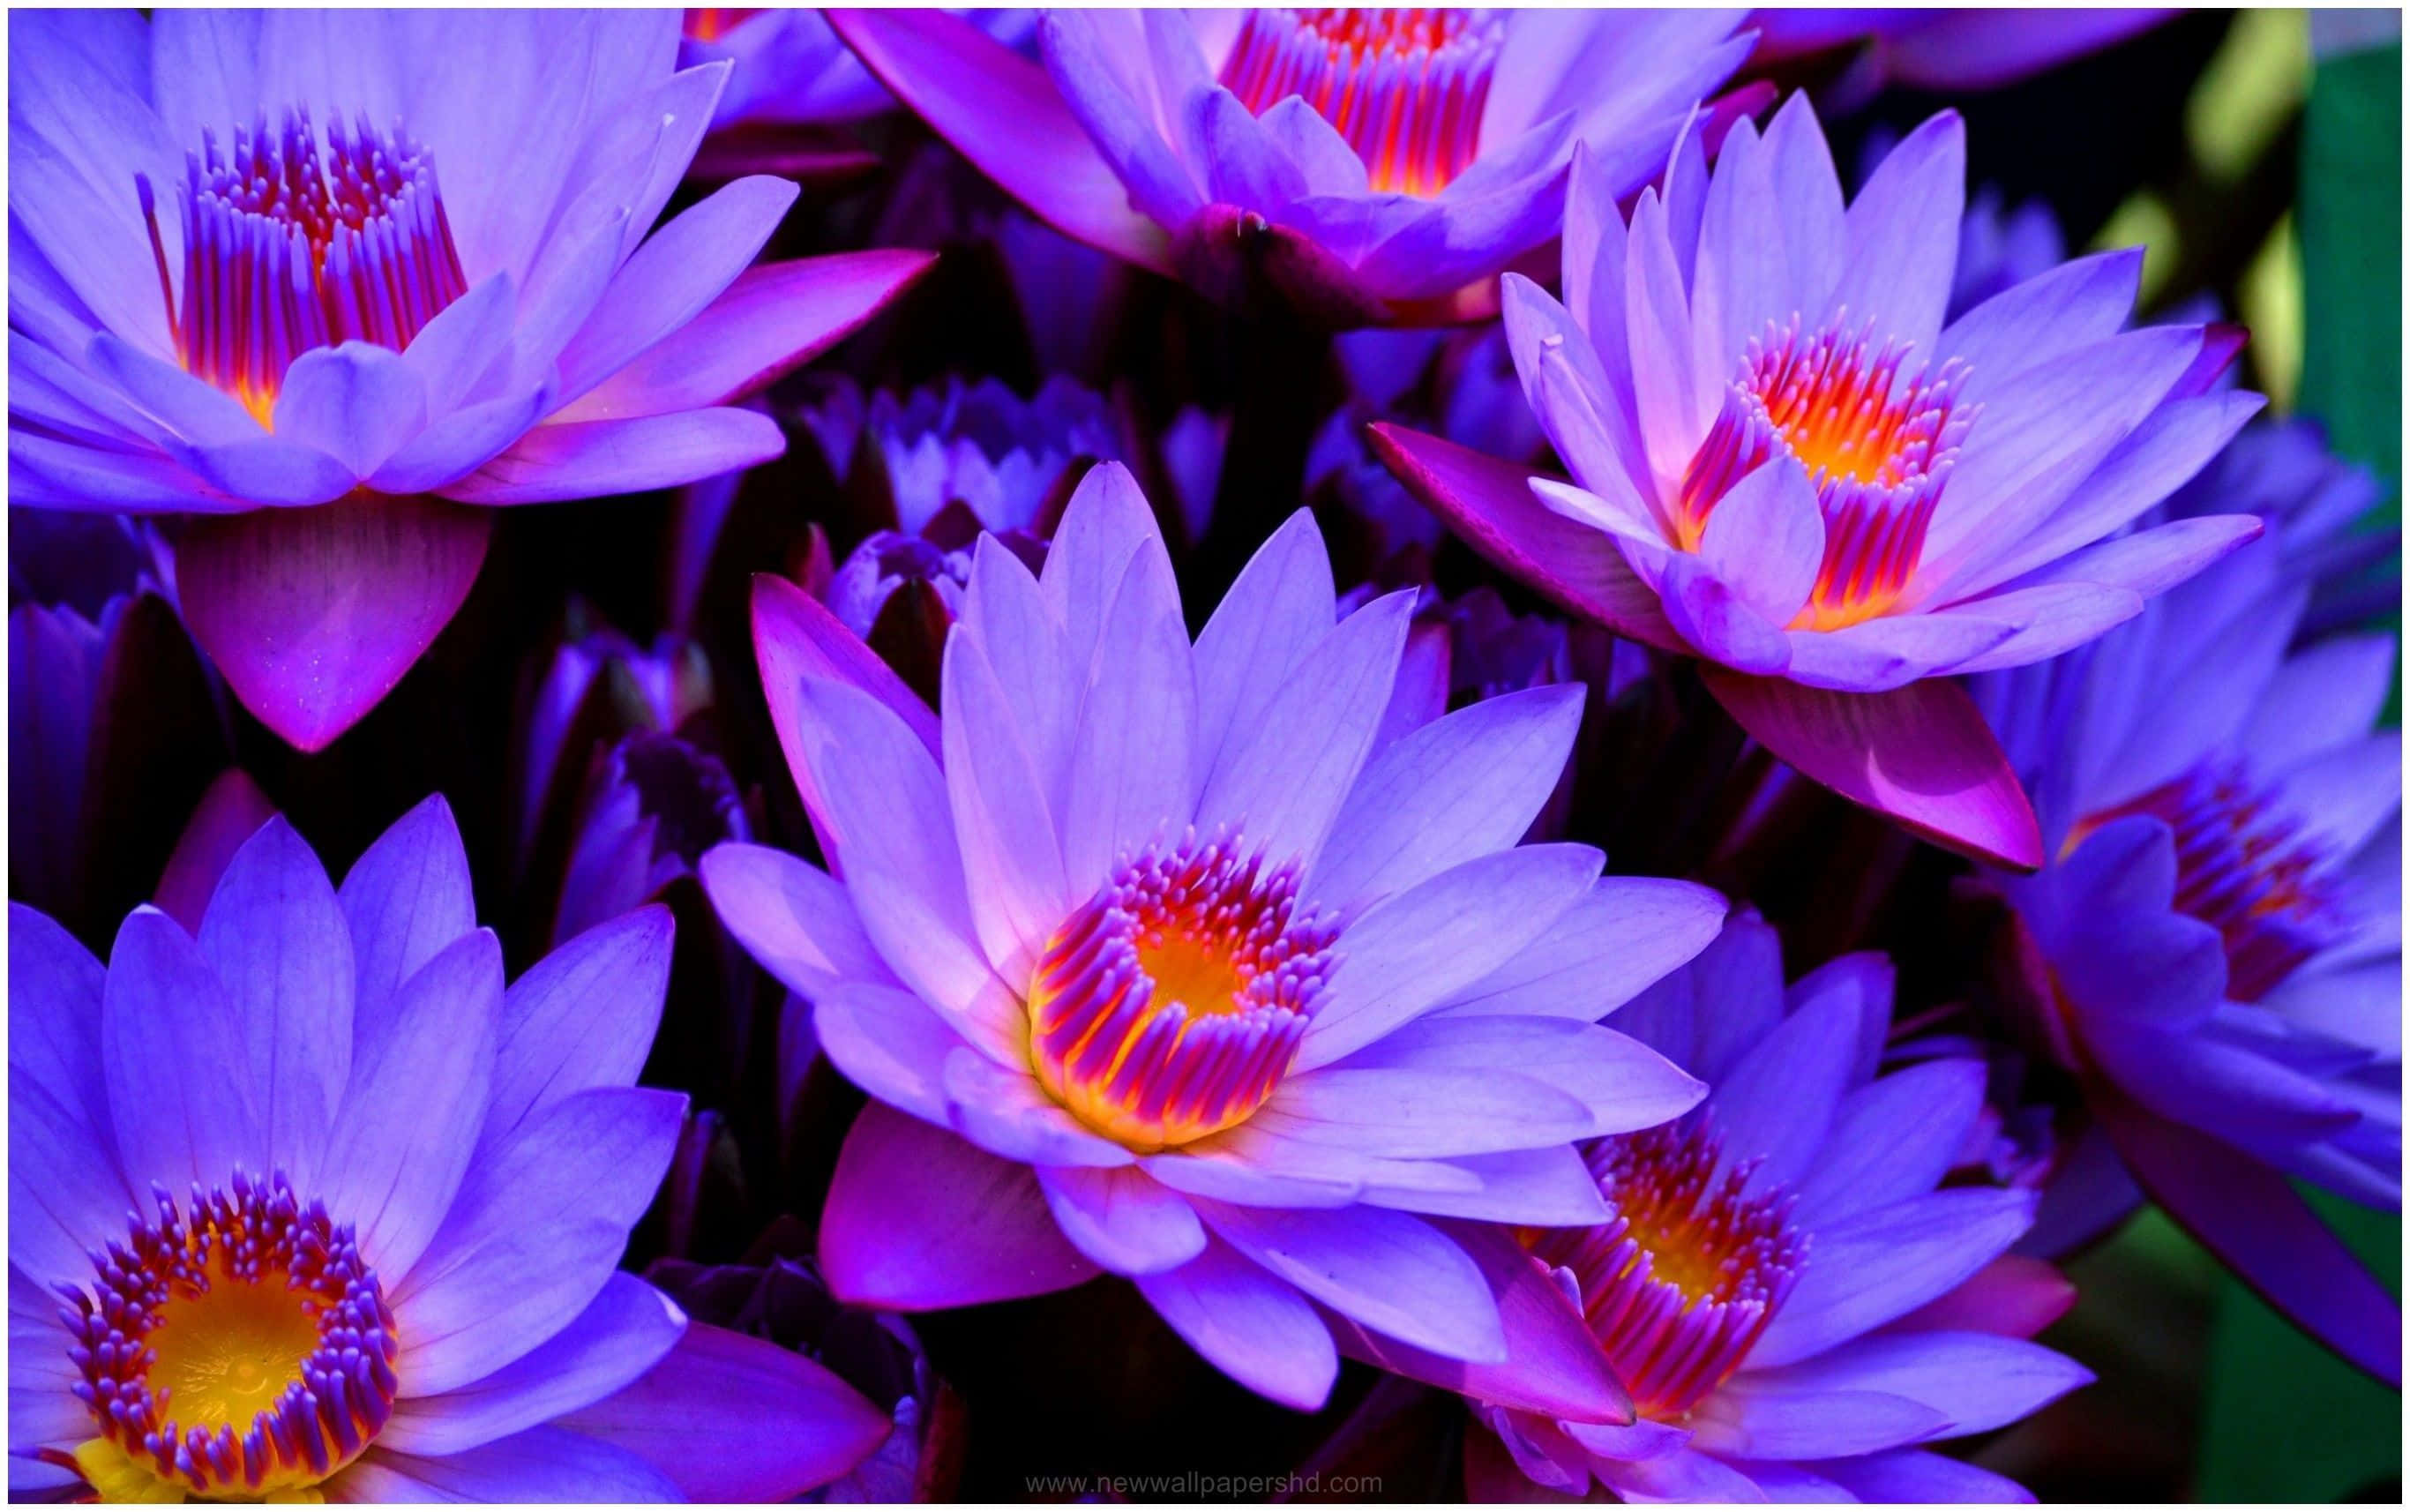 Caption: Serene Lotus Flower in Full Bloom